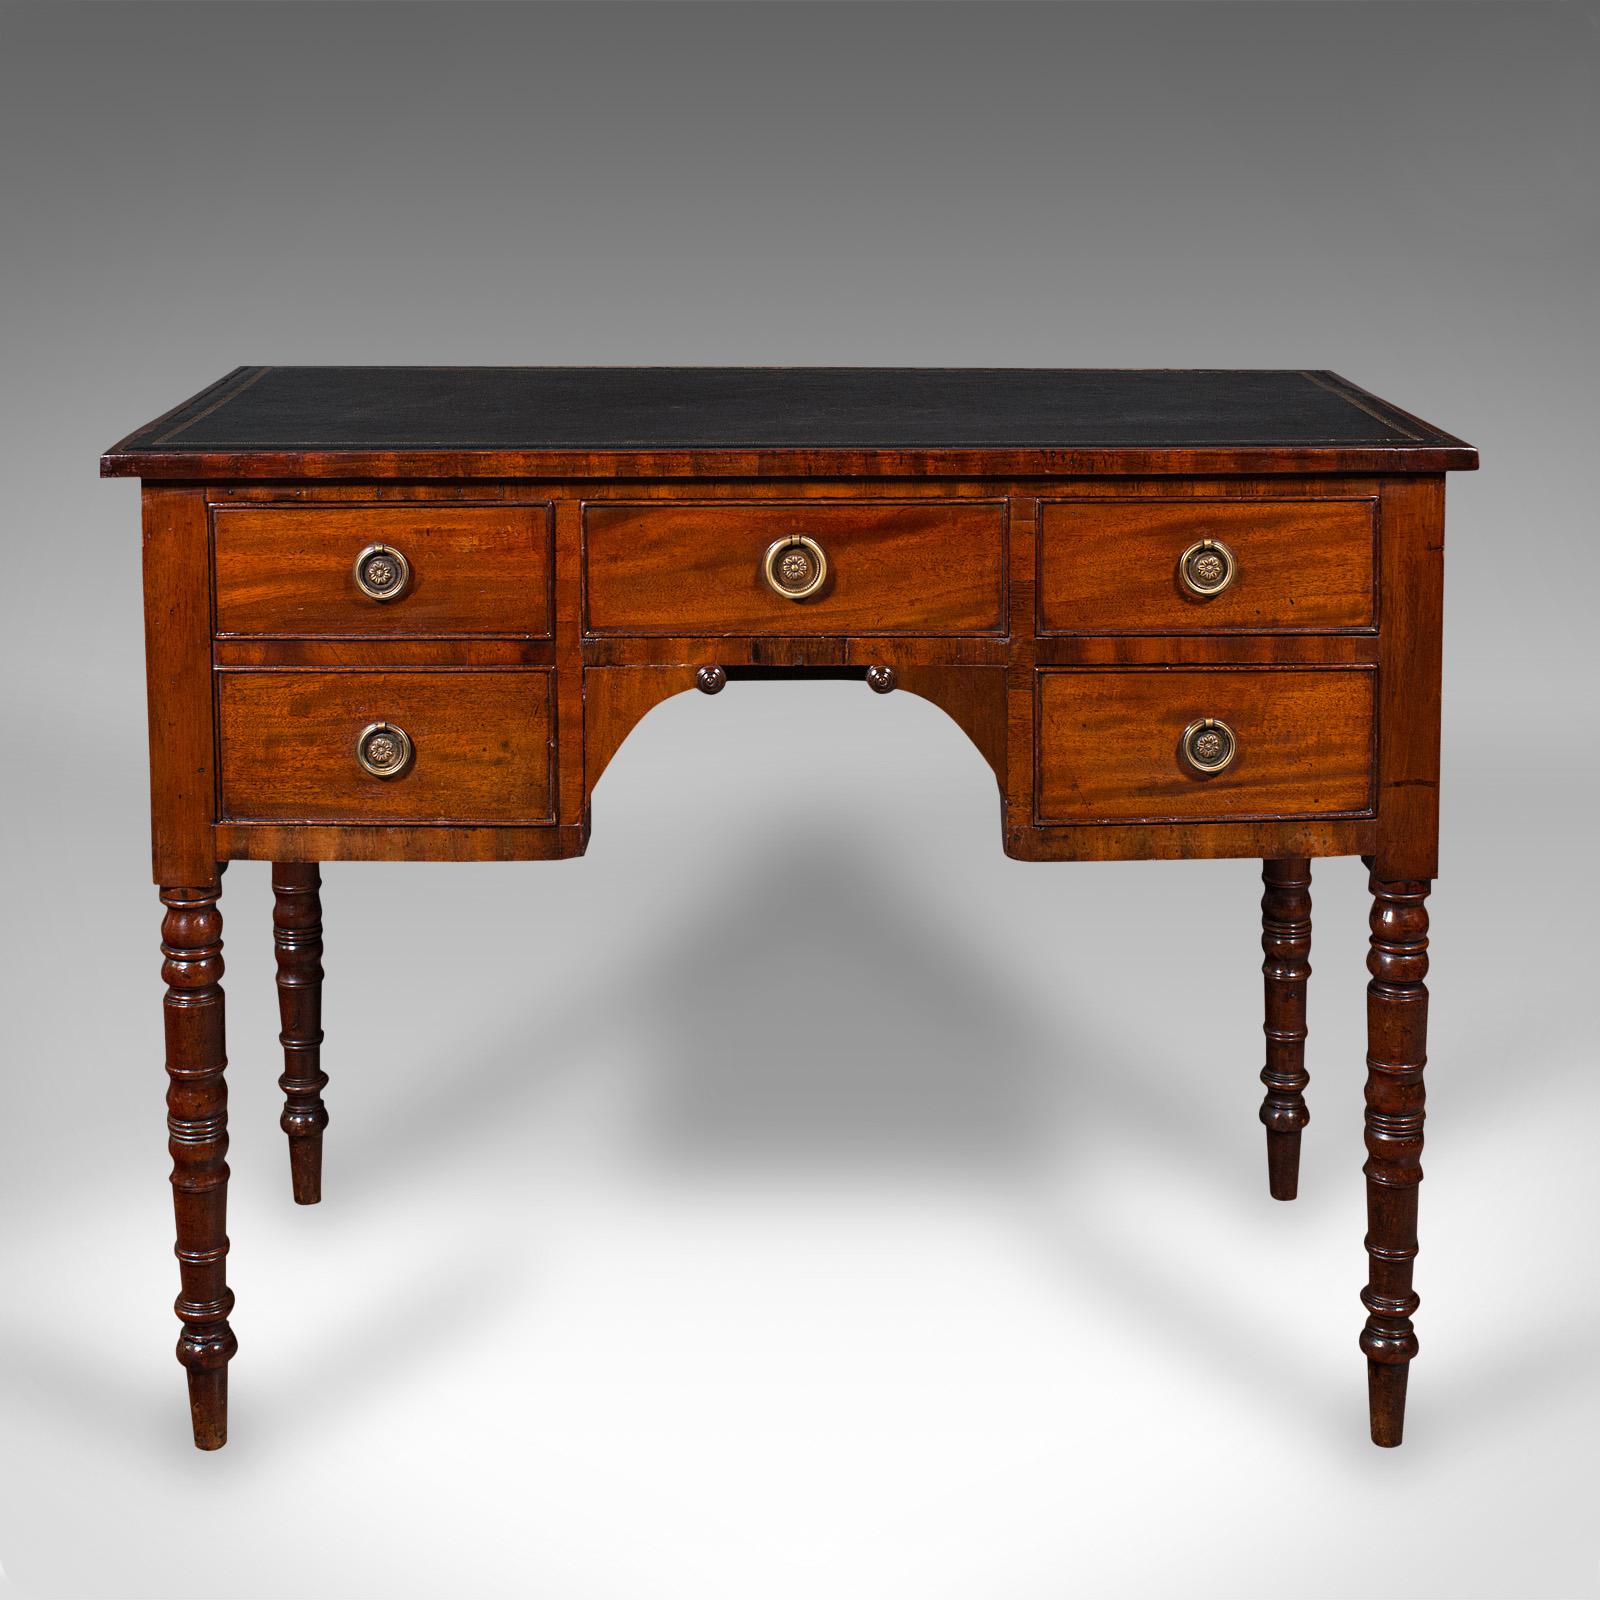 Dies ist ein antiker Damenschreibtisch. Ein englischer Korrespondenztisch aus Mahagoni und Leder aus der frühen viktorianischen Zeit, um 1850.

Angenehm zierlicher Schreibtisch mit reizvollem Aussehen
Zeigt eine wünschenswerte gealterte Patina und